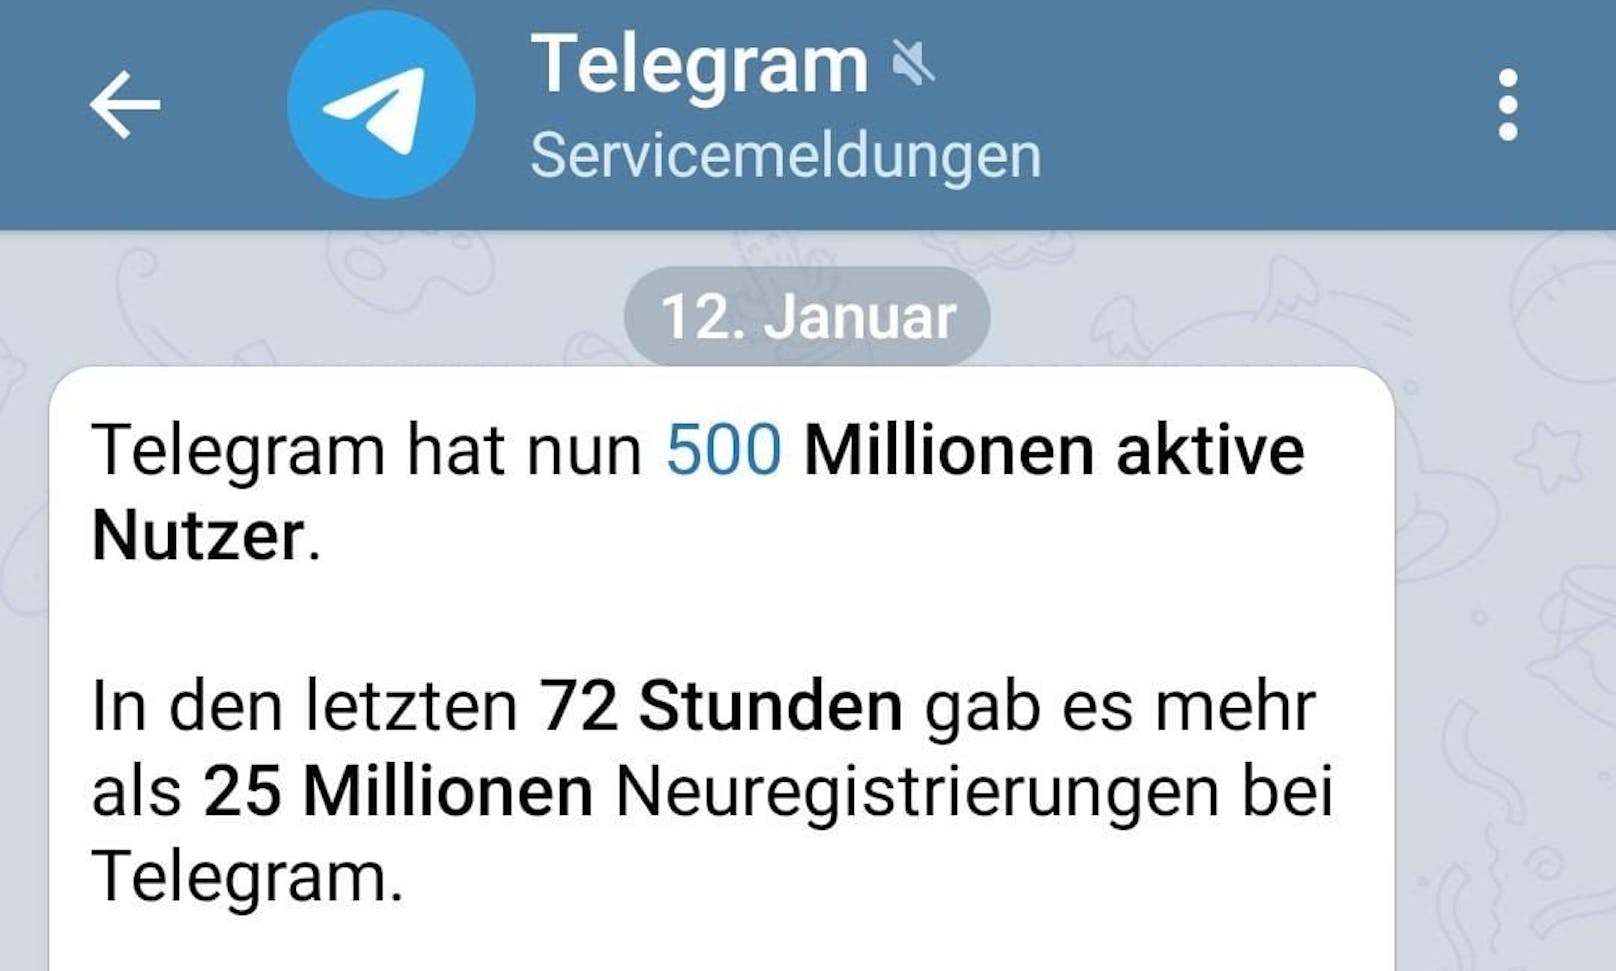 <strong>Telegram meldete 25 Millionen Neuregistrierungen innerhalb von drei Tagen.</strong>